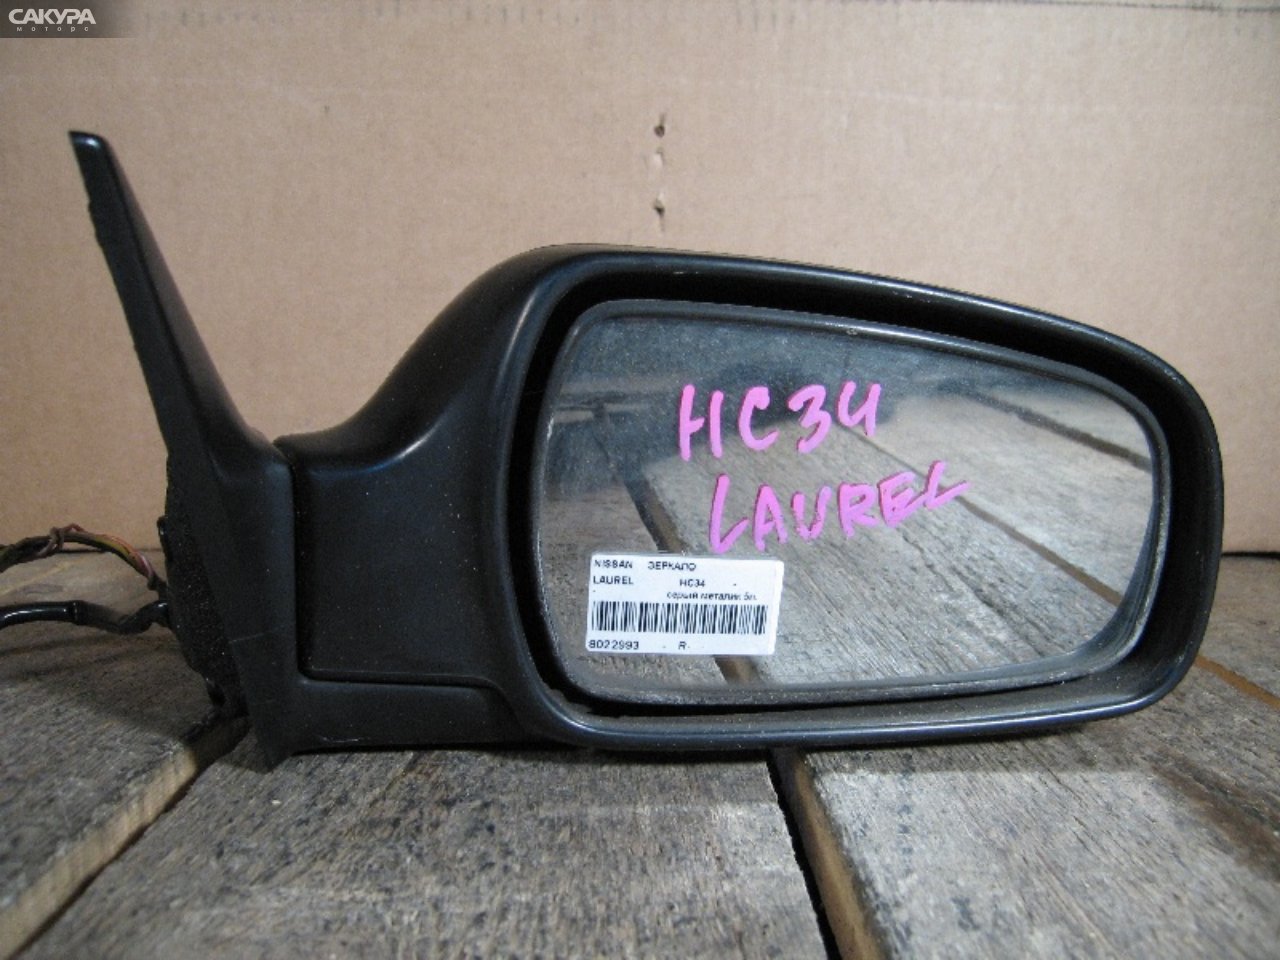 Зеркало боковое правое Nissan Laurel HC34: купить в Сакура Абакан.